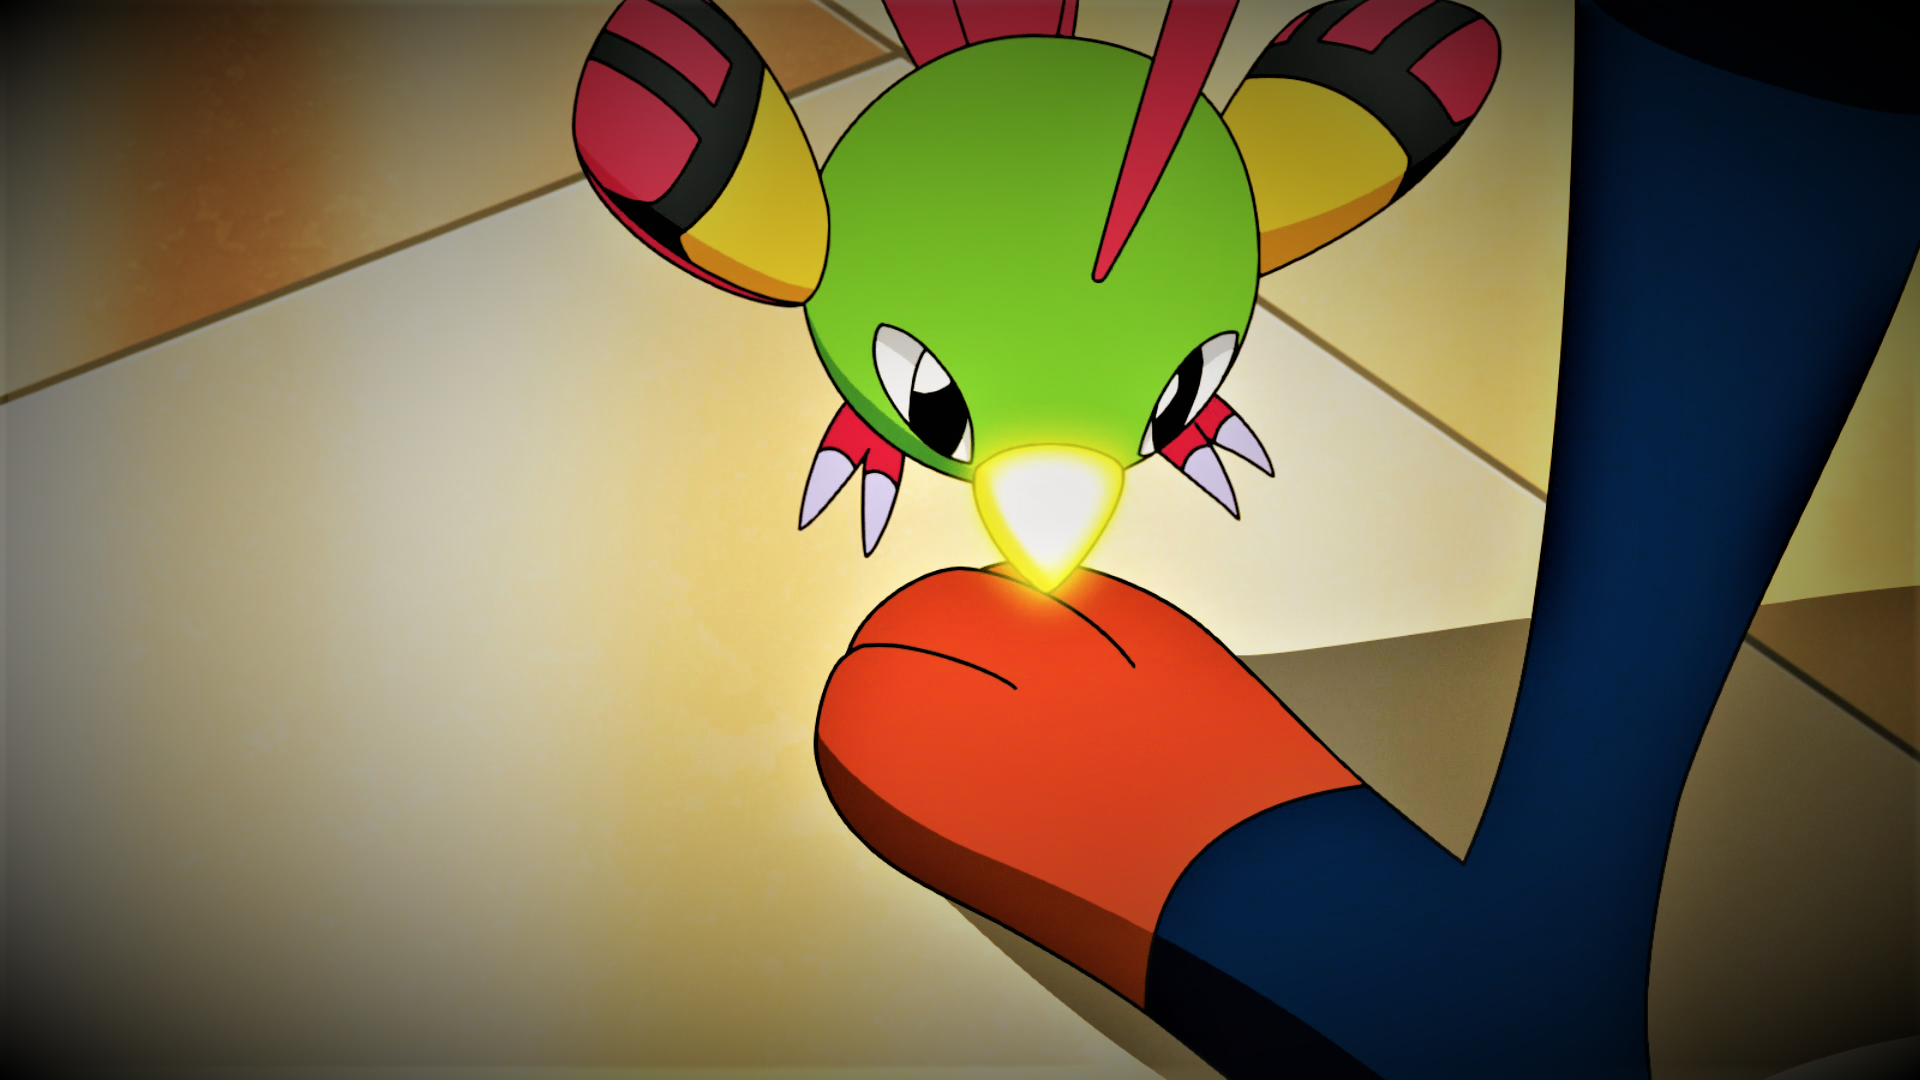 Zangoose's Mega Punch by Pokemonsketchartist on DeviantArt